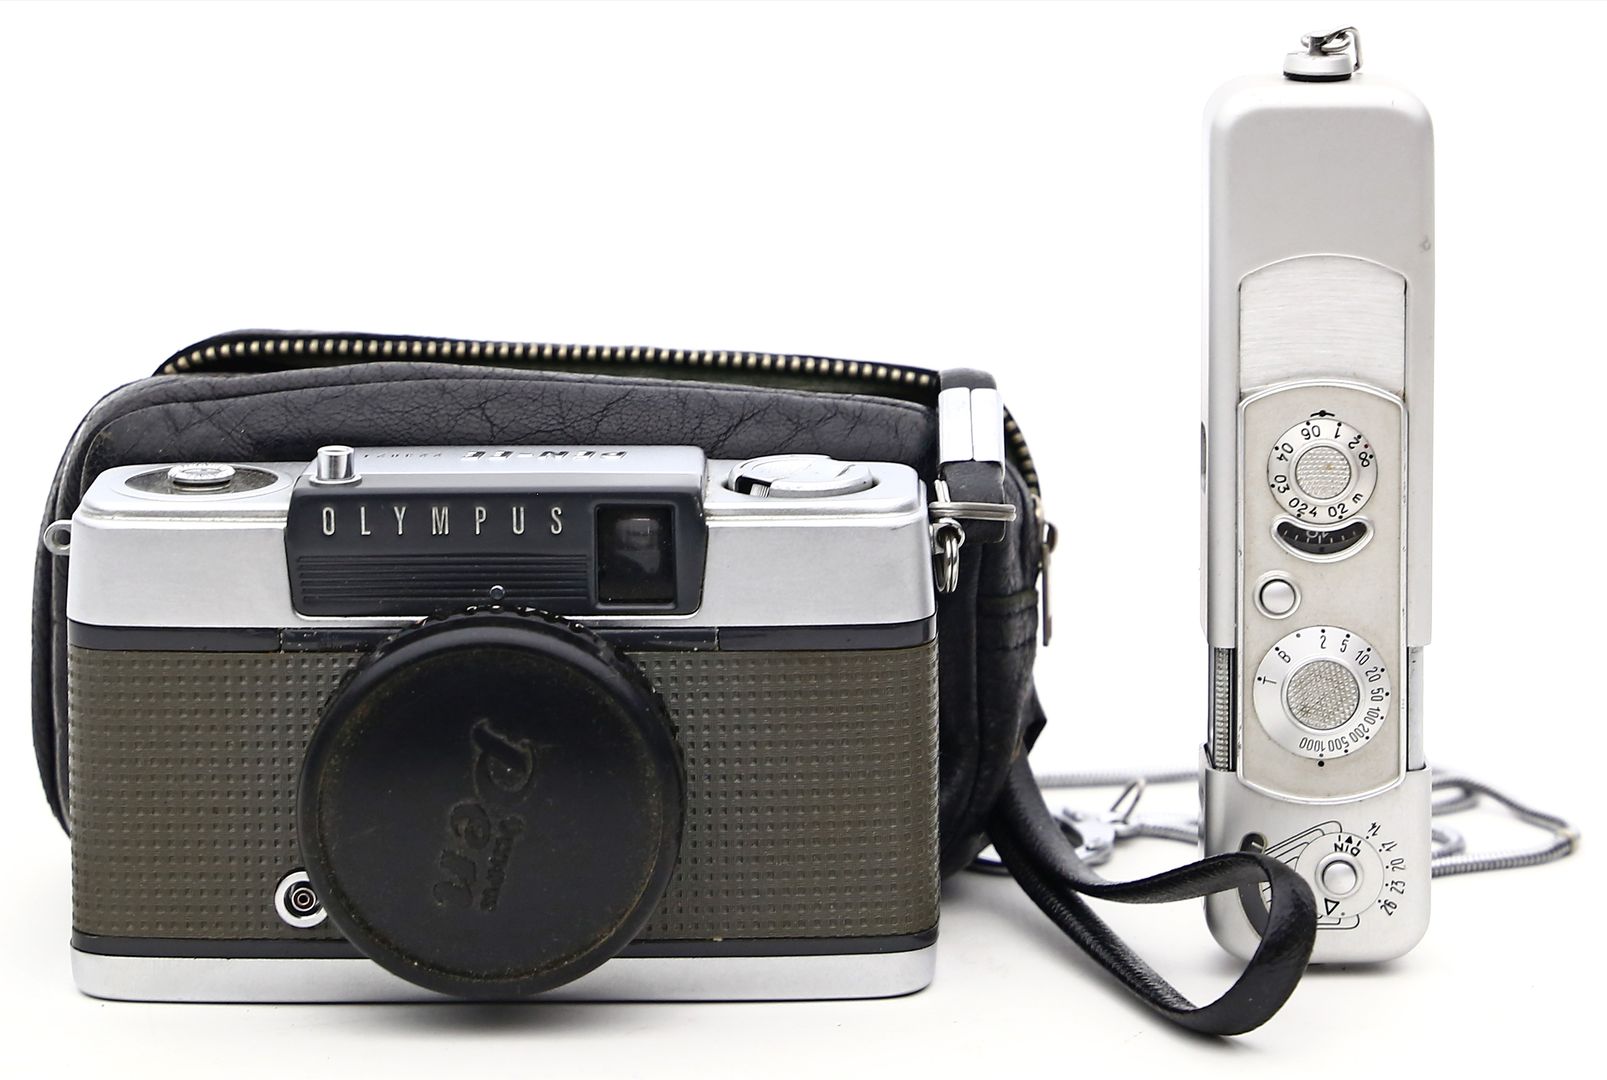 Suchkamera "Olympus Pen EE" und Miniatur-Kamera "Miox".